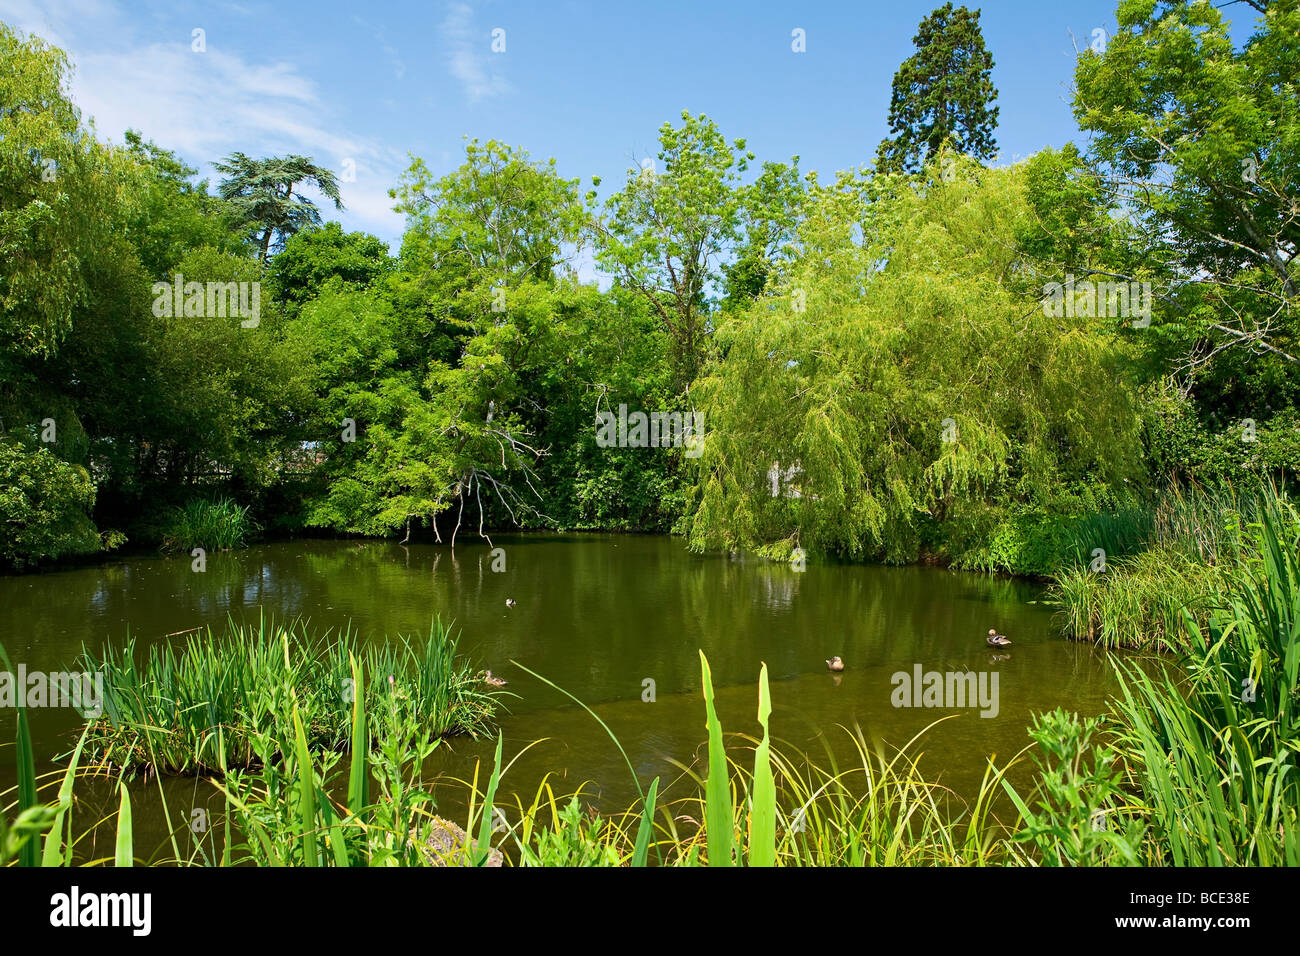 Village pond, Slindon, West Sussex, UK Stock Photo